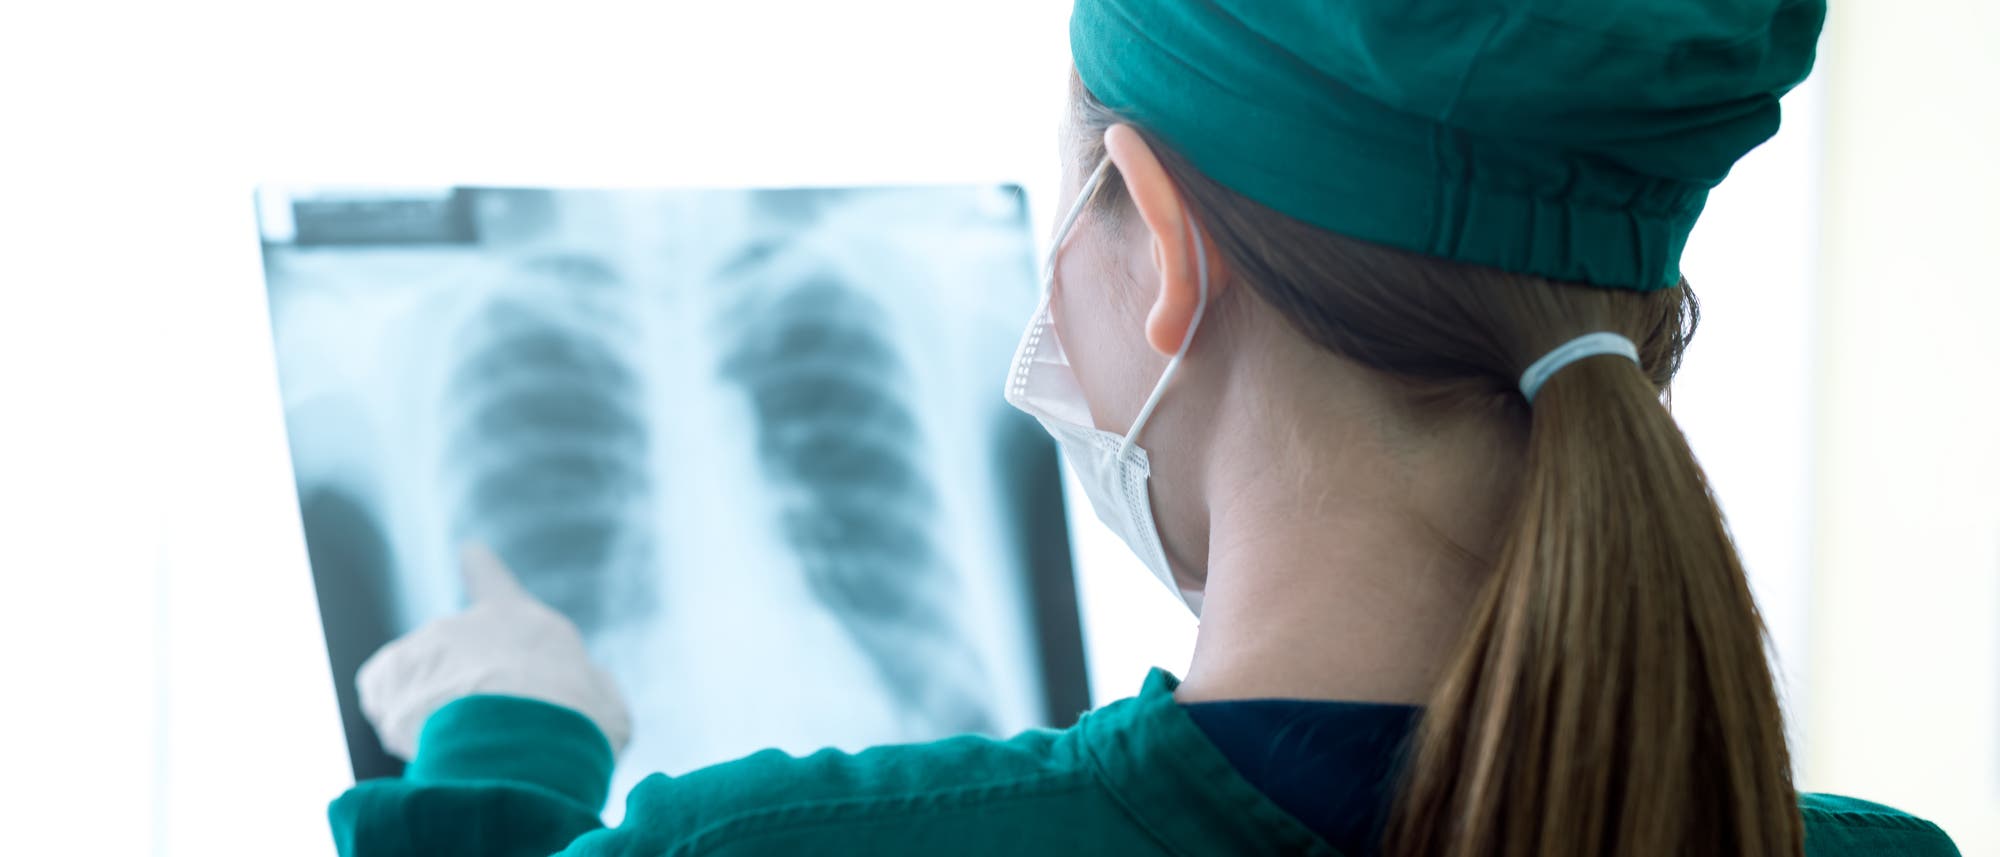 Ärztin begutachtet Röntgenbild einer menschlichen Lunge